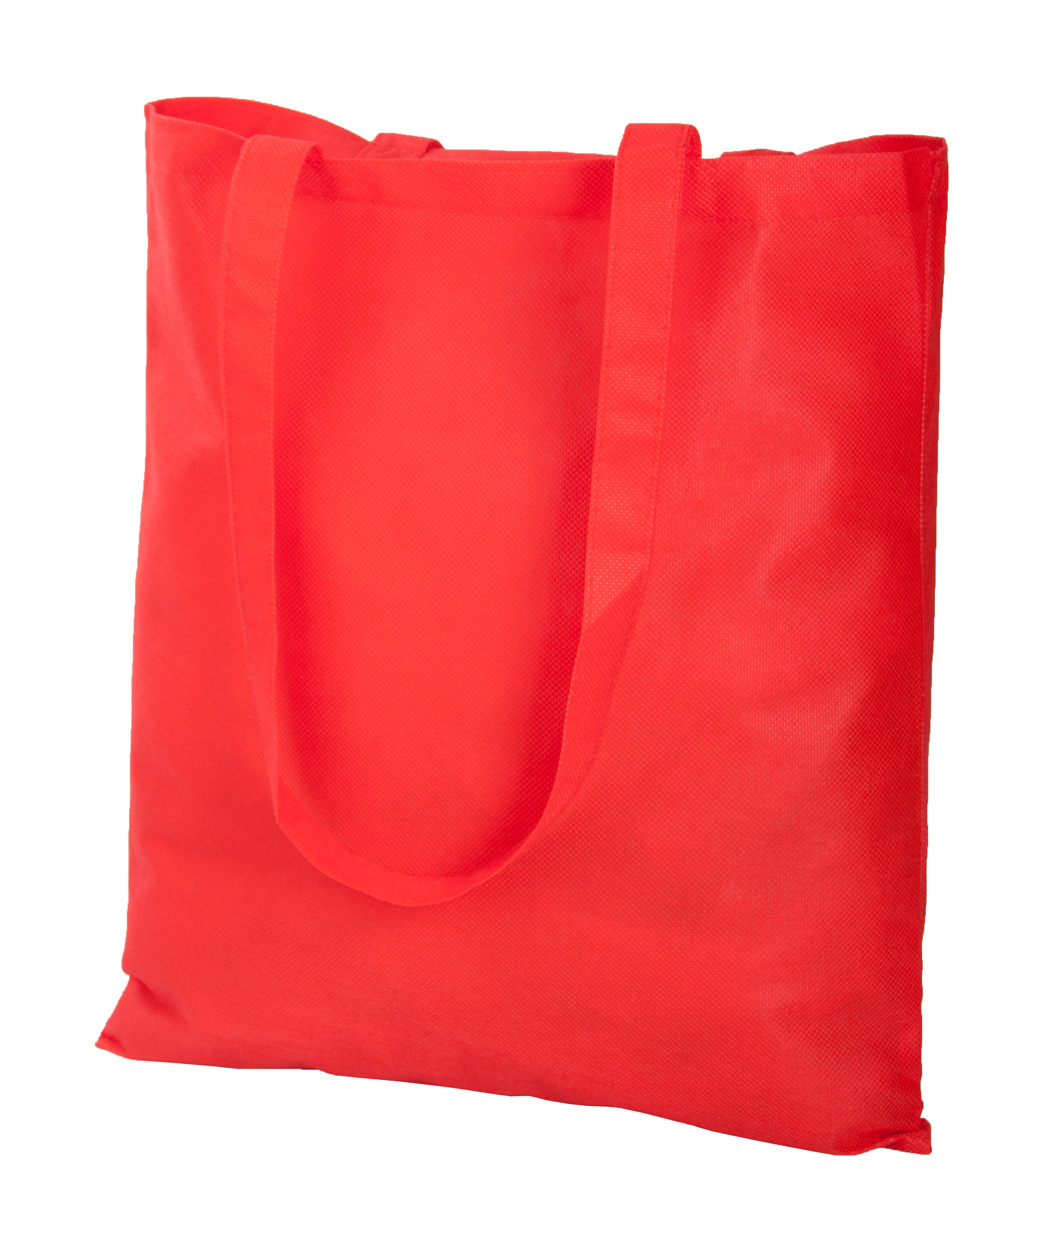 Fabric shopping bag FAIR made of non-woven fabric